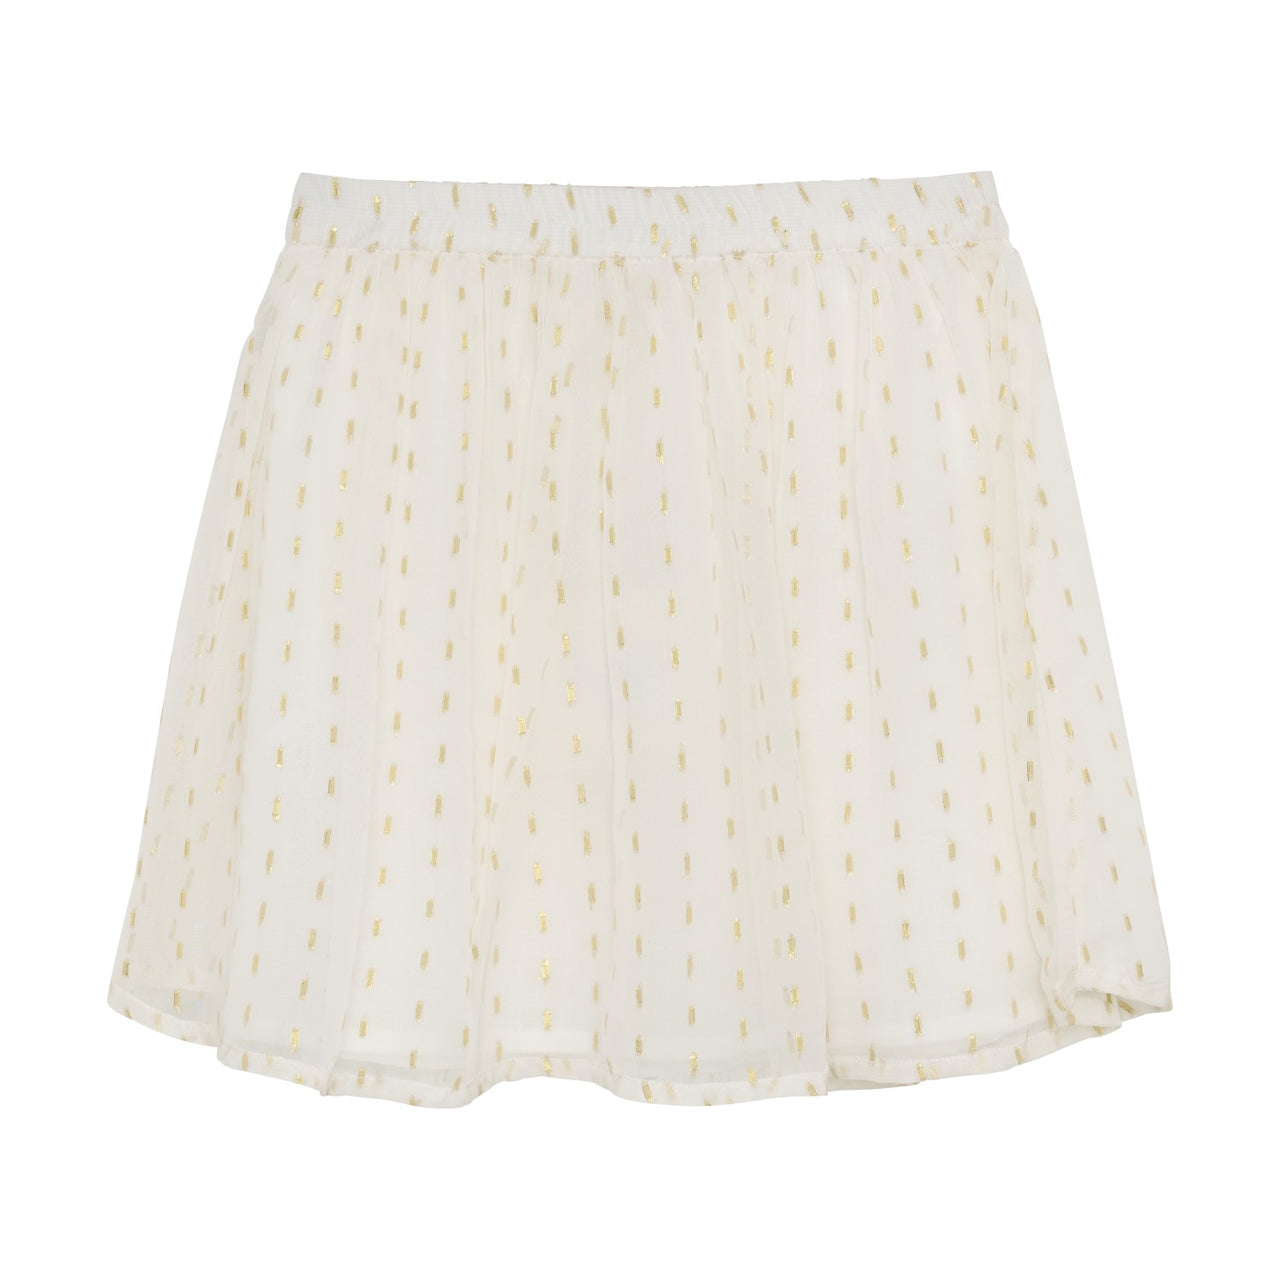 Buttercream Chiffon Skirt